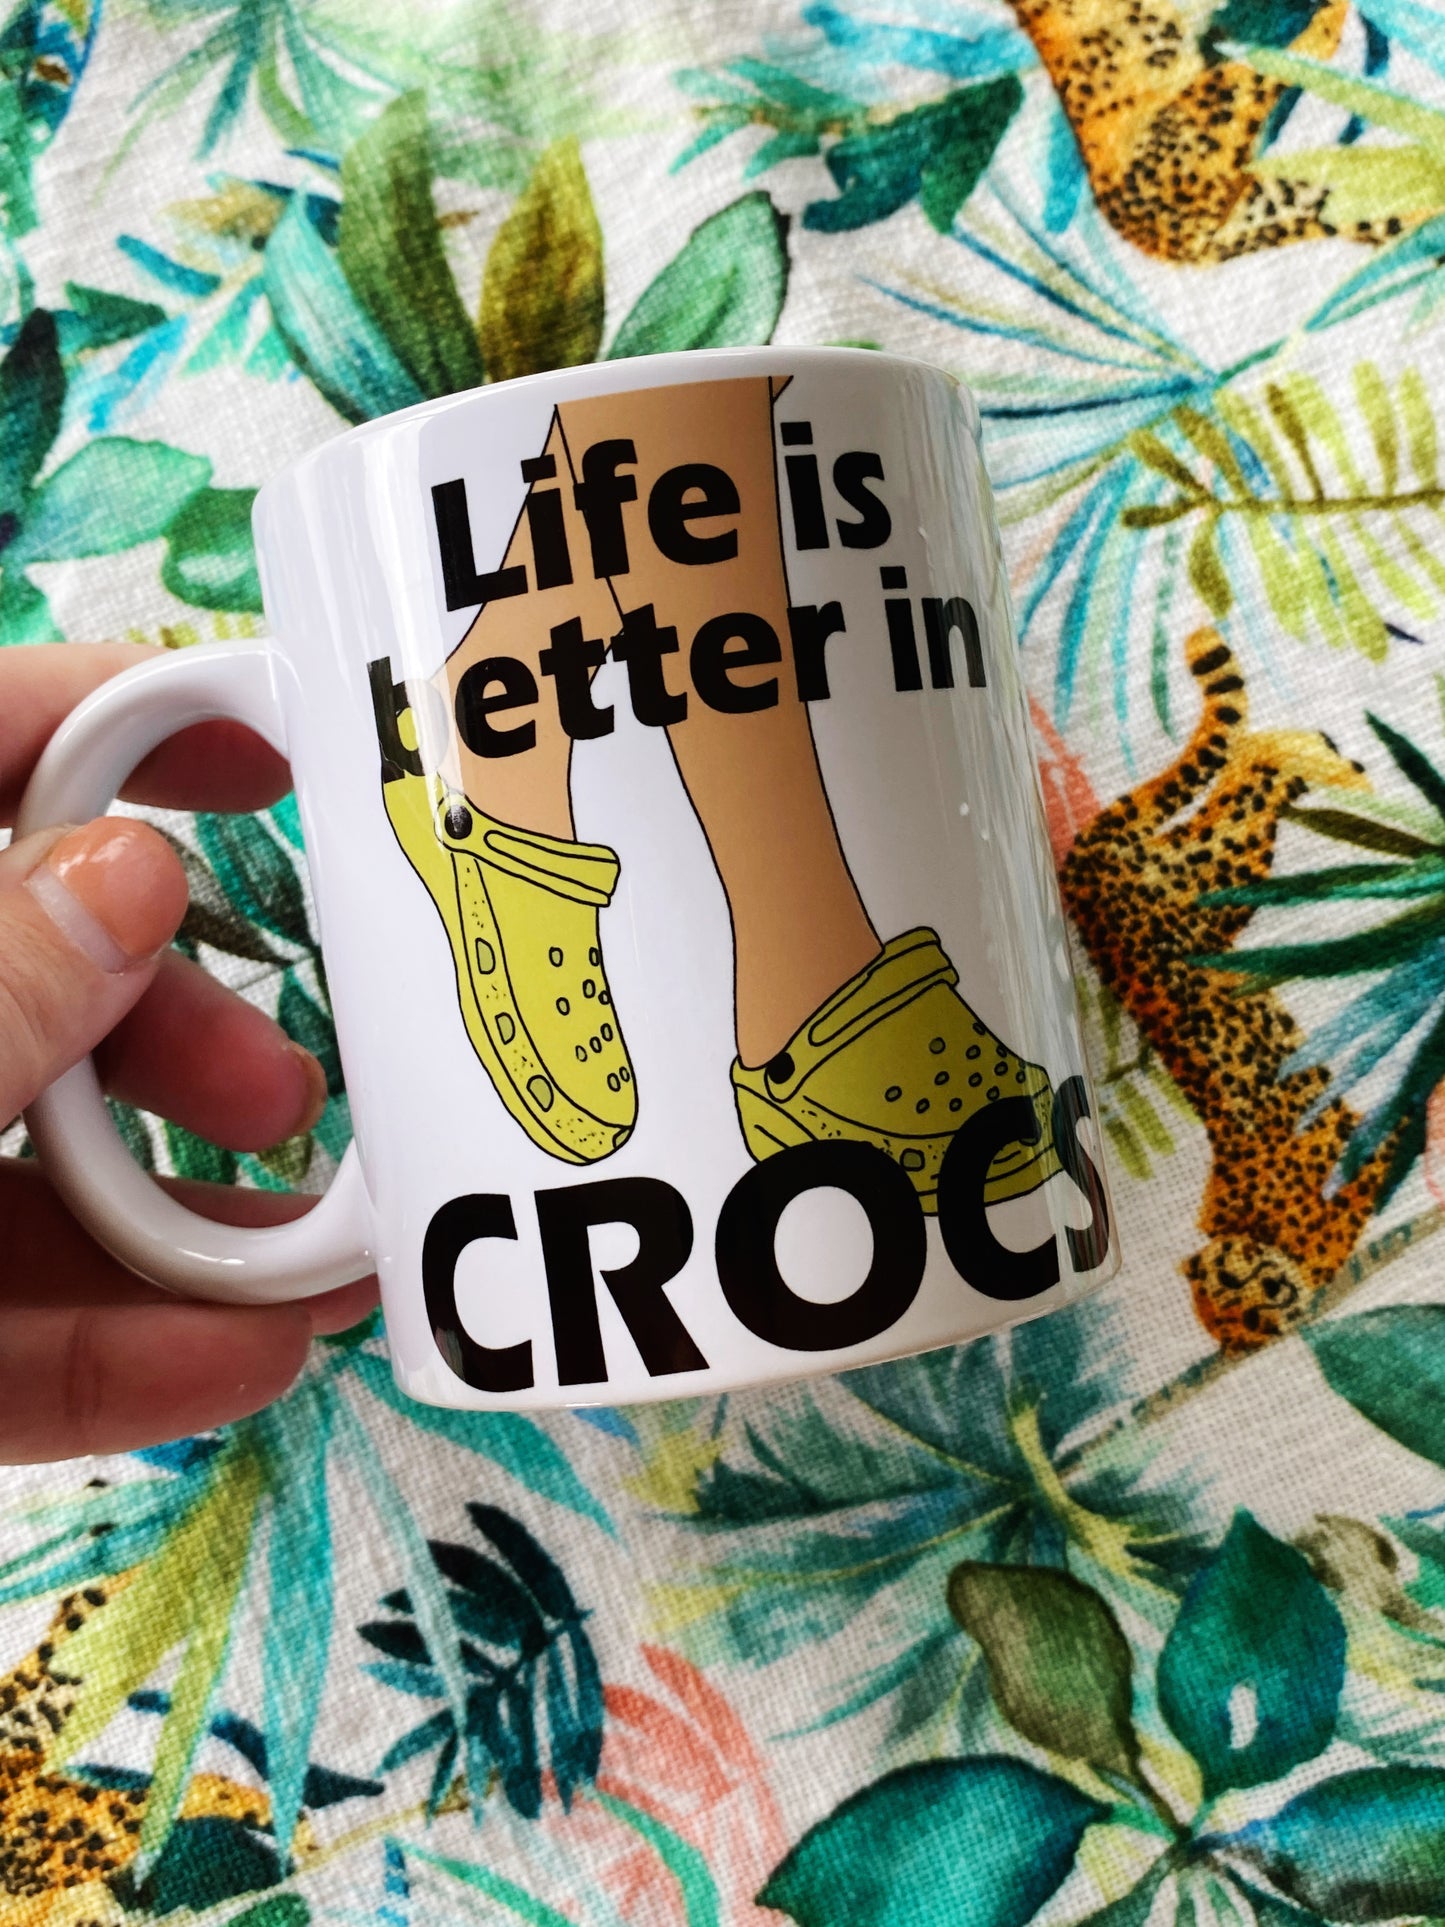 Life is better in crocs